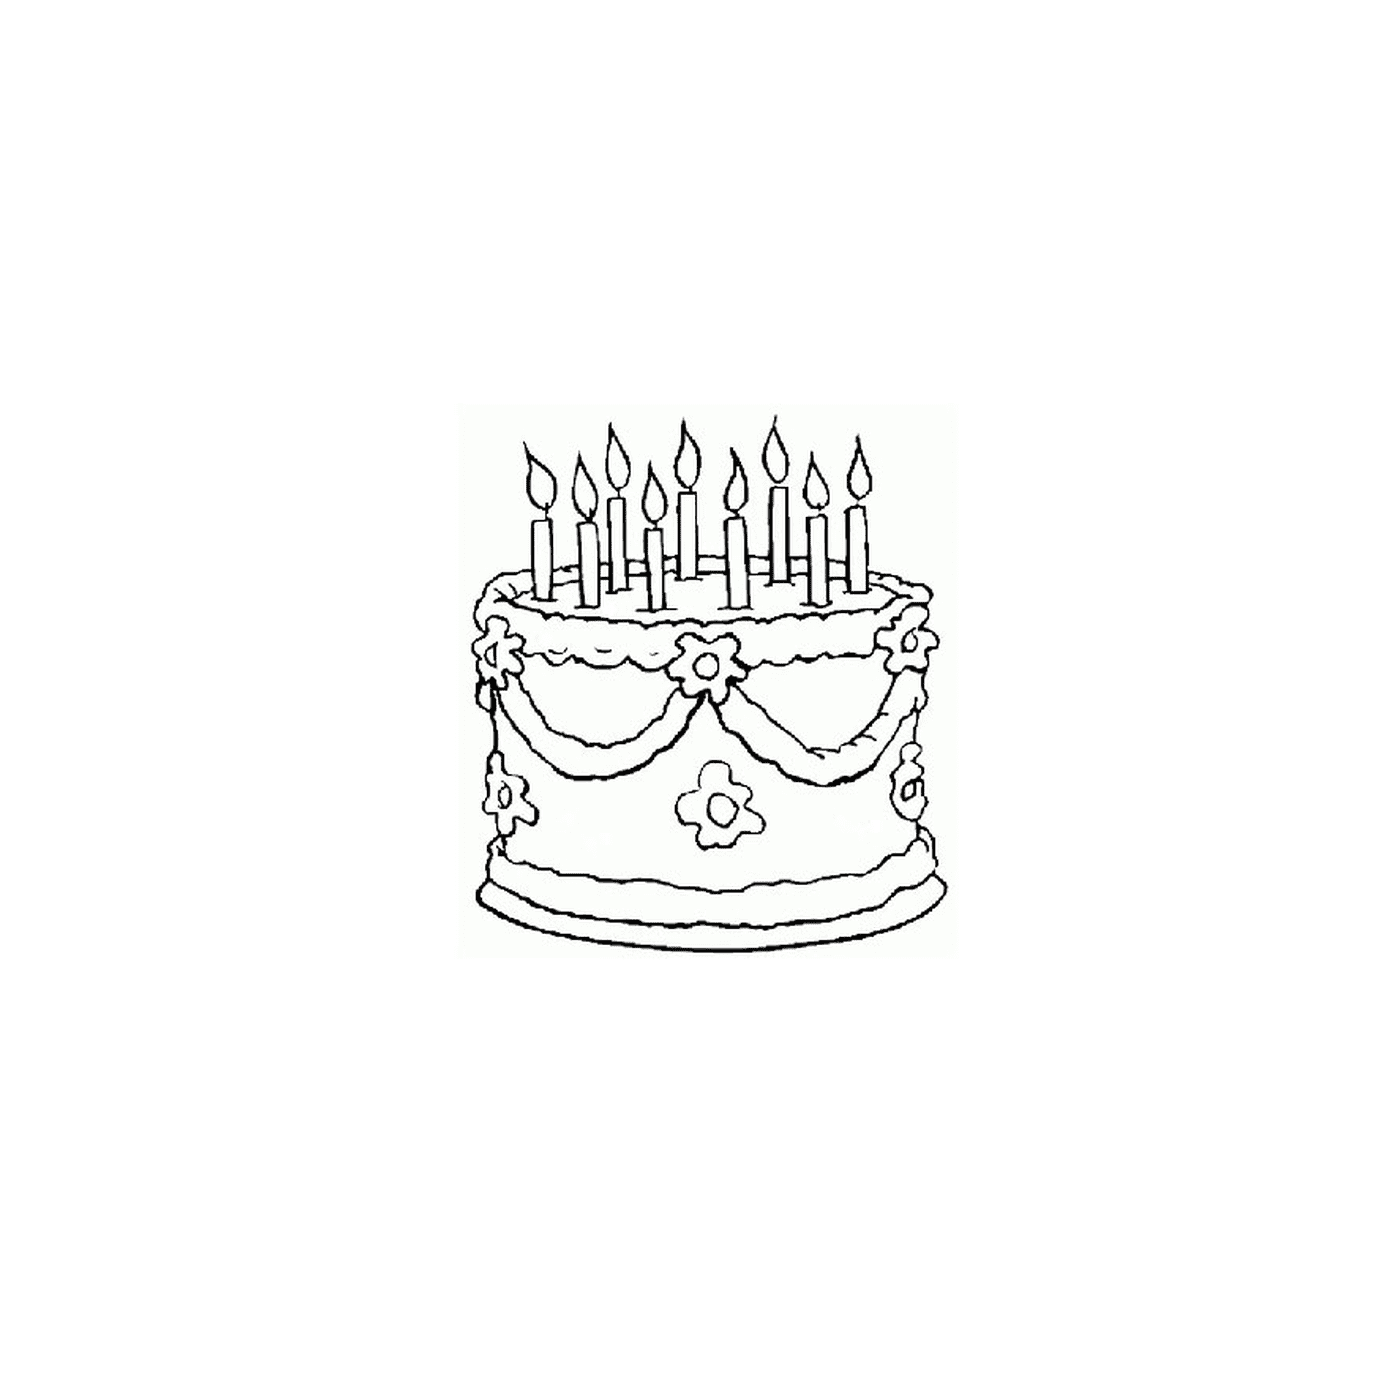  um bolo de aniversário com velas acesas 